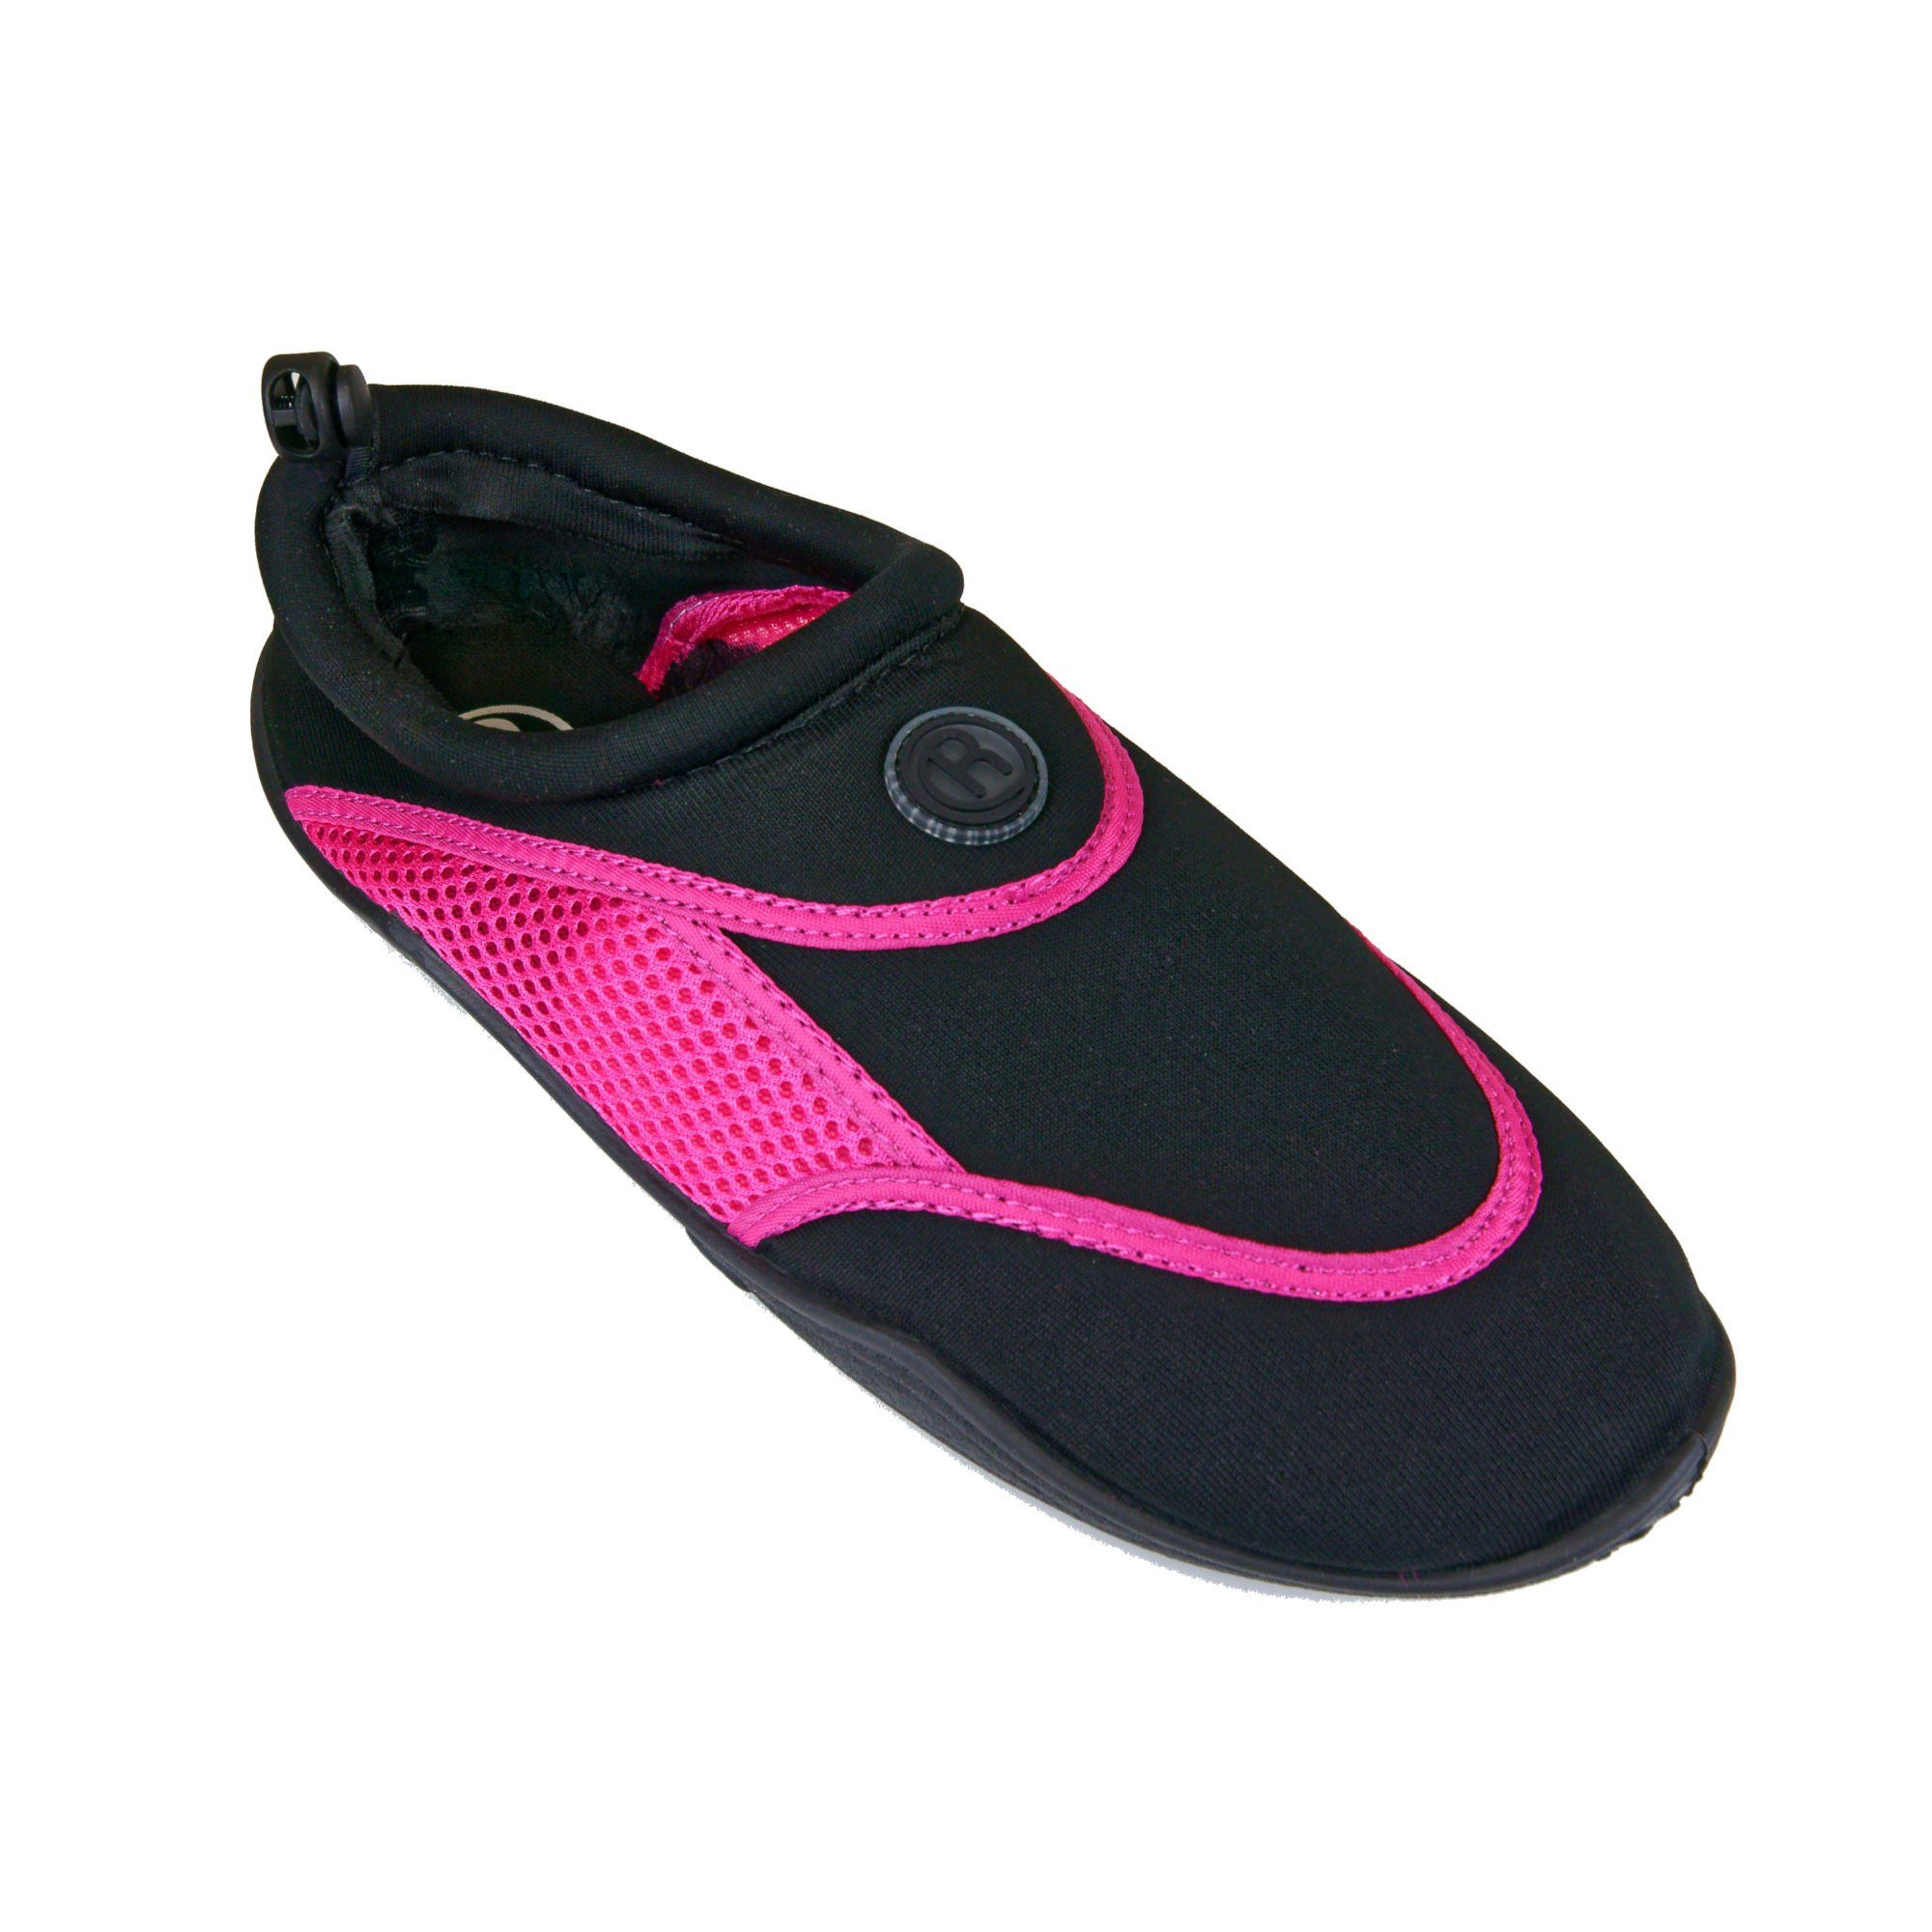 Aqua-Schuhe Pink/Black Badeschuh / Rutscherlebnis Surf-Schuhe